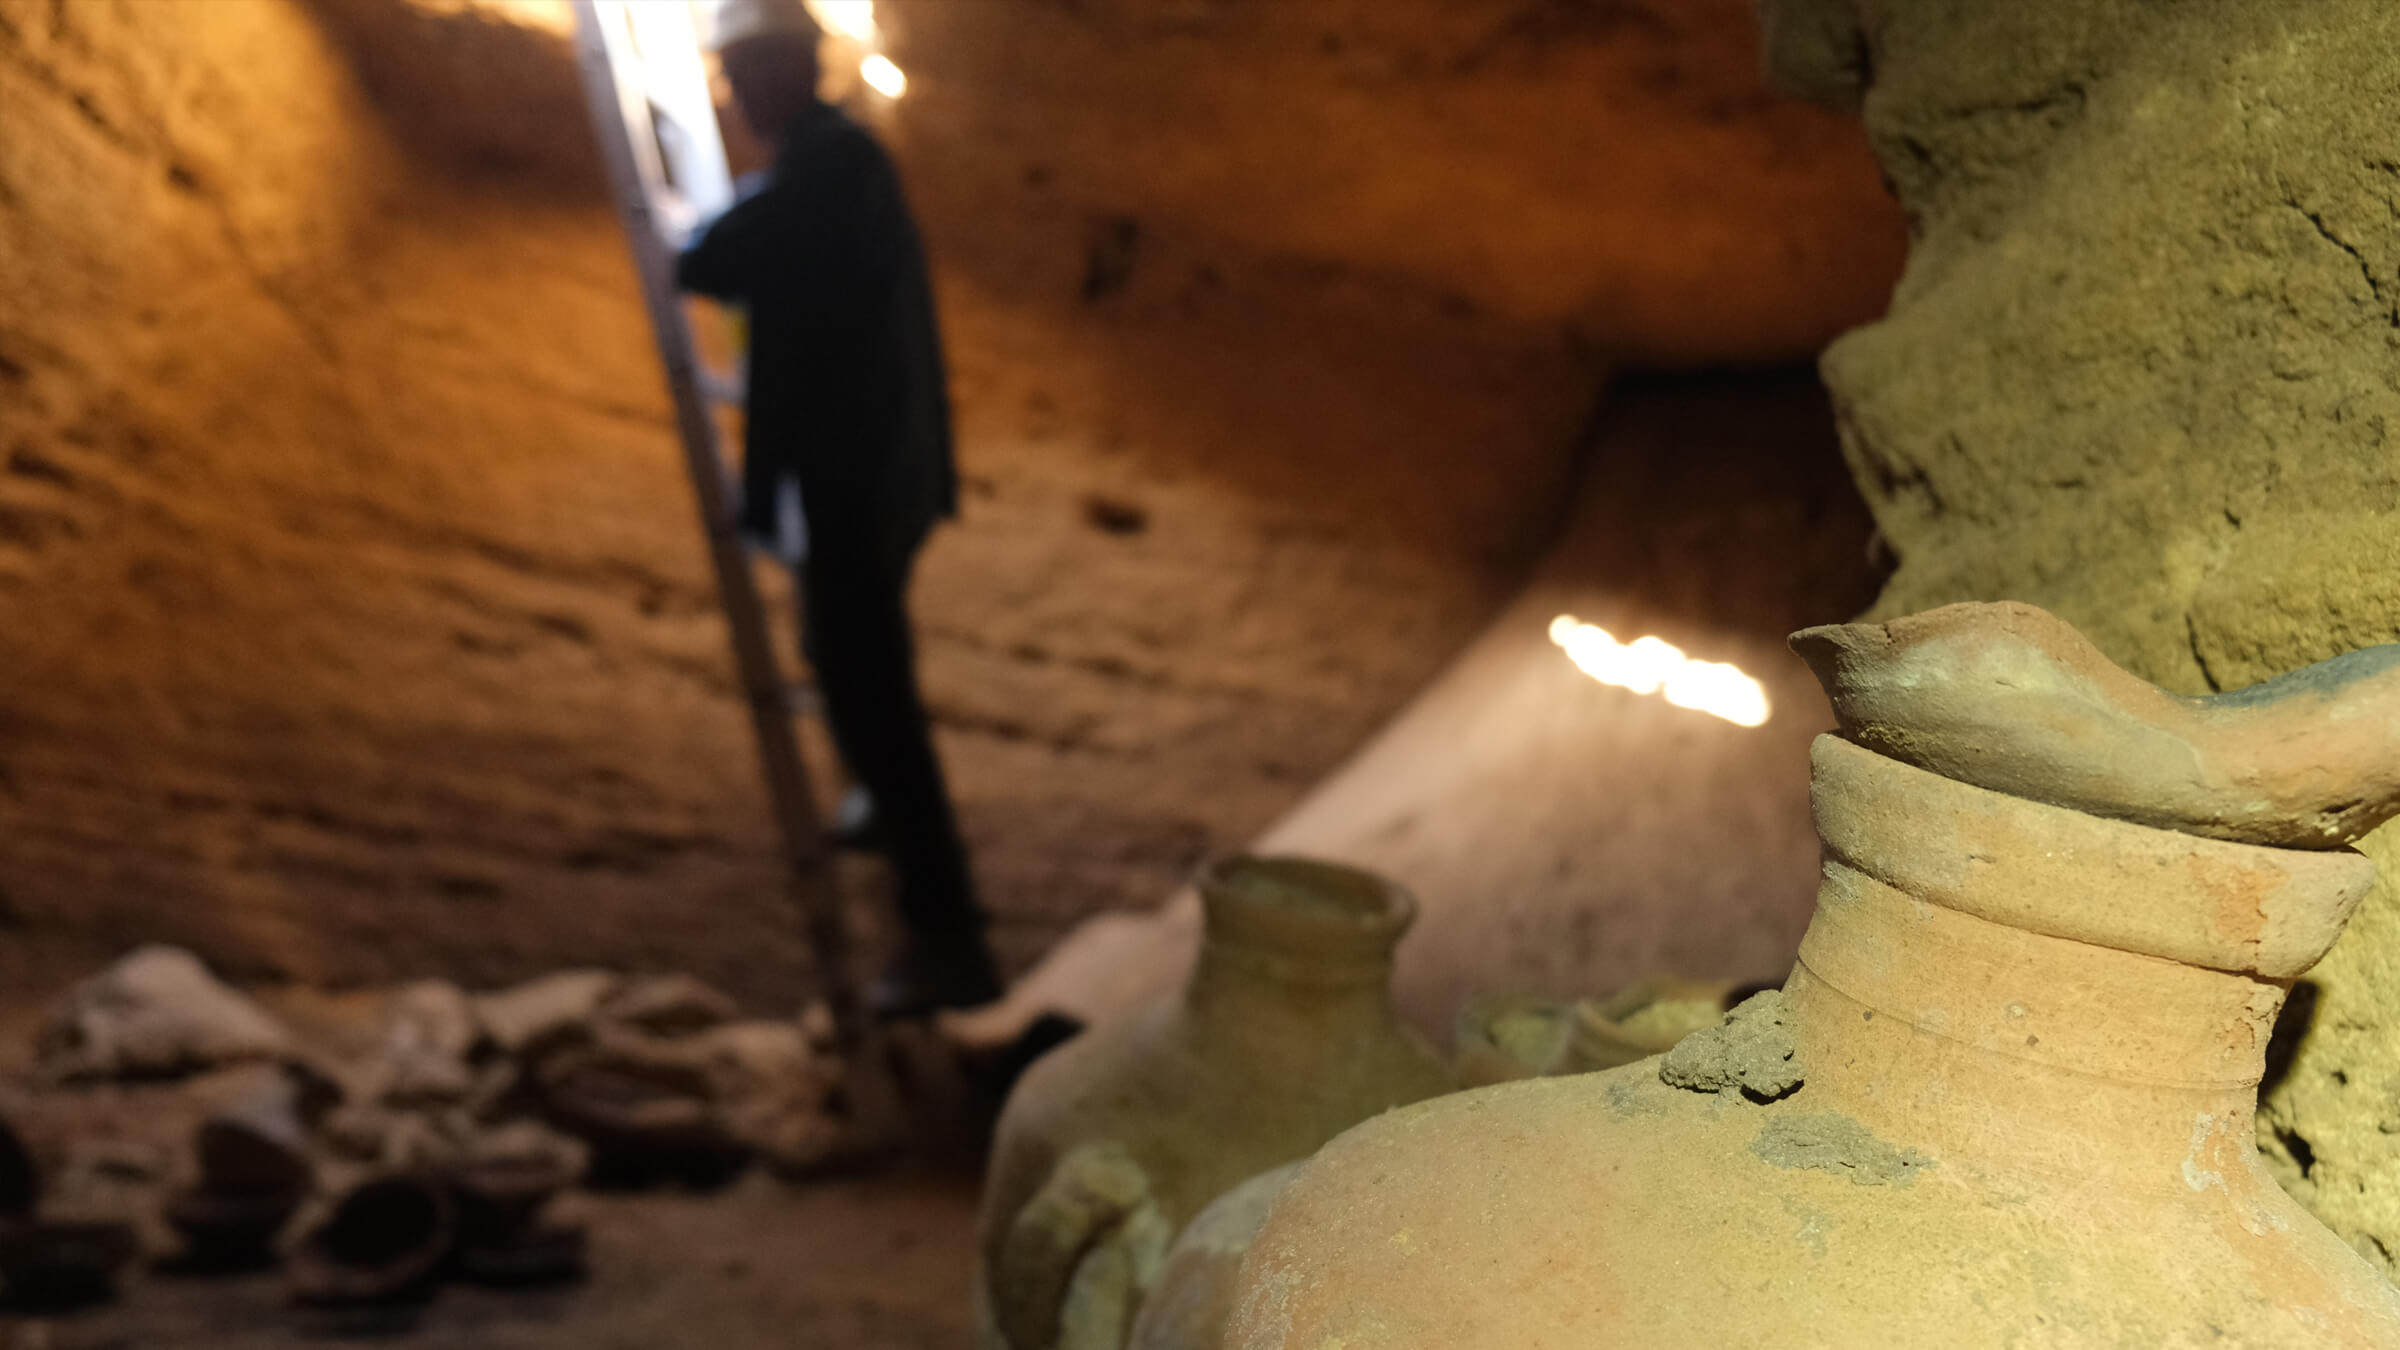 Drevnaja peschera 1 <p>В Израиле археологи сообщили об удивительной находке -бнаружена пещера, которая 3300 лет назад была запечатана древними людьми. Что самое удивительное, она находилась возле пляжа к югу от Тель-Авива. То есть все это время пещера была на виду людей, однако последний раз человек посещал ее более трех тысячелетий назад. Она была найдена совершенно случайно, когда экскаватор в национальном парке Палмахим-Бич пробил ковшом ее крышу, и рабочие увидели полость. Сразу же на место были вызваны археологи, которые тщательно изучили находку. По их словам, складывалось впечатление, что эта пещера “застыла во времени”. Но что прятали в ней древние люди и для чего вообще ее использовали? Несмотря на то, что находка совсем свежая, ответы на эти вопросы уже имеются.